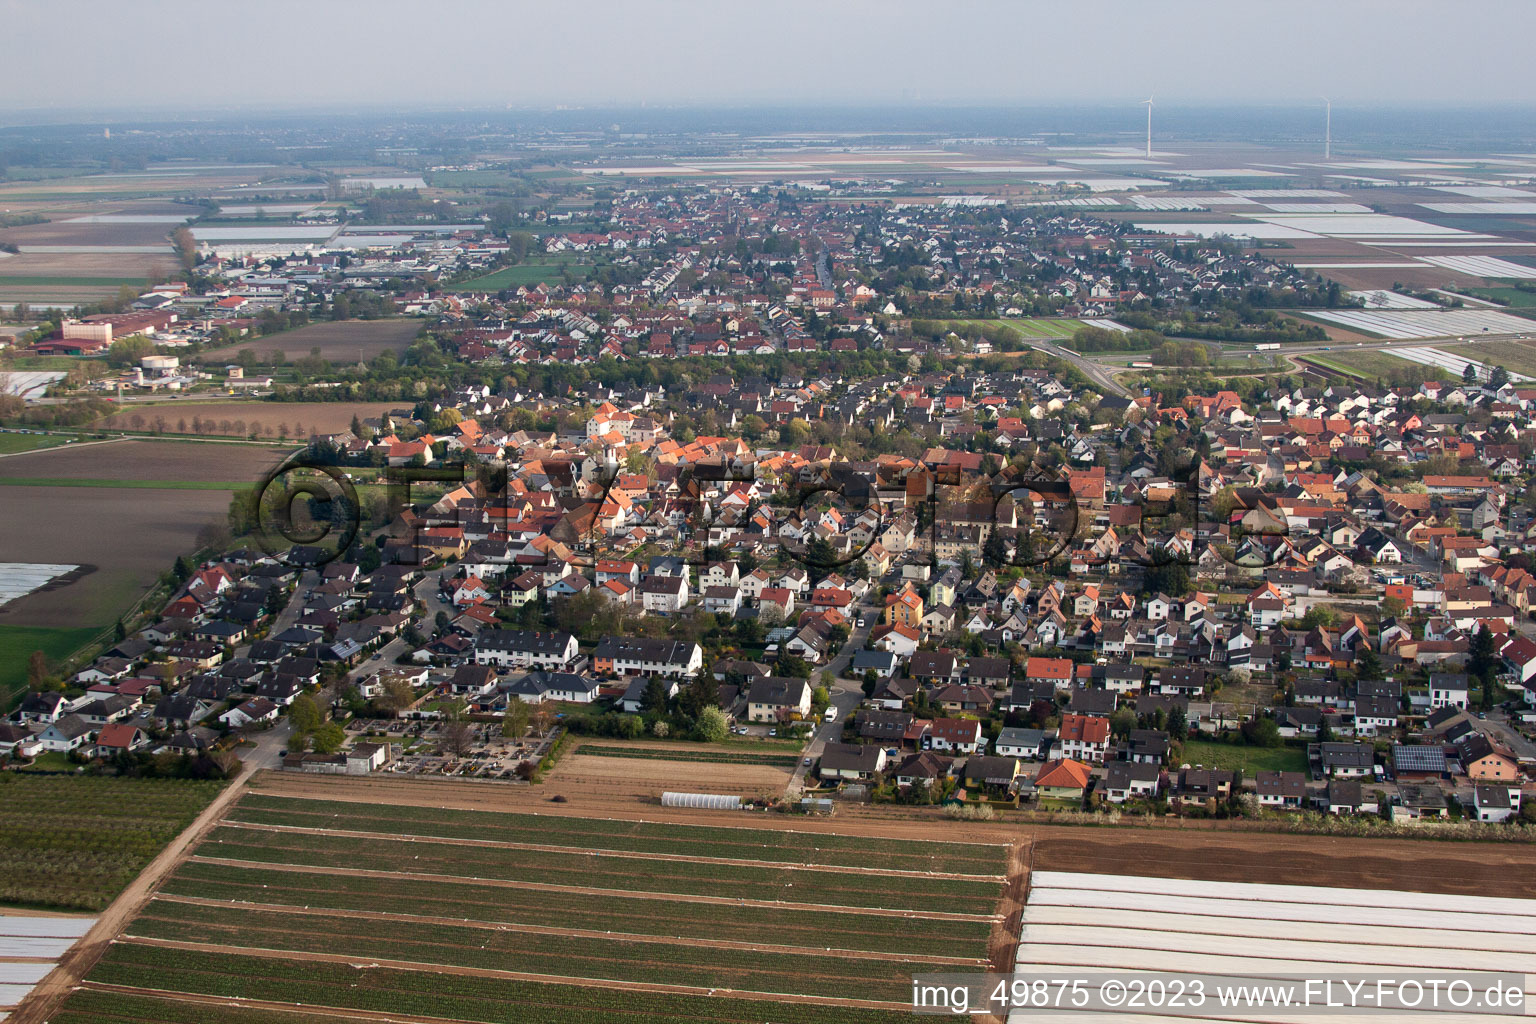 District Schauernheim in Dannstadt-Schauernheim in the state Rhineland-Palatinate, Germany from above